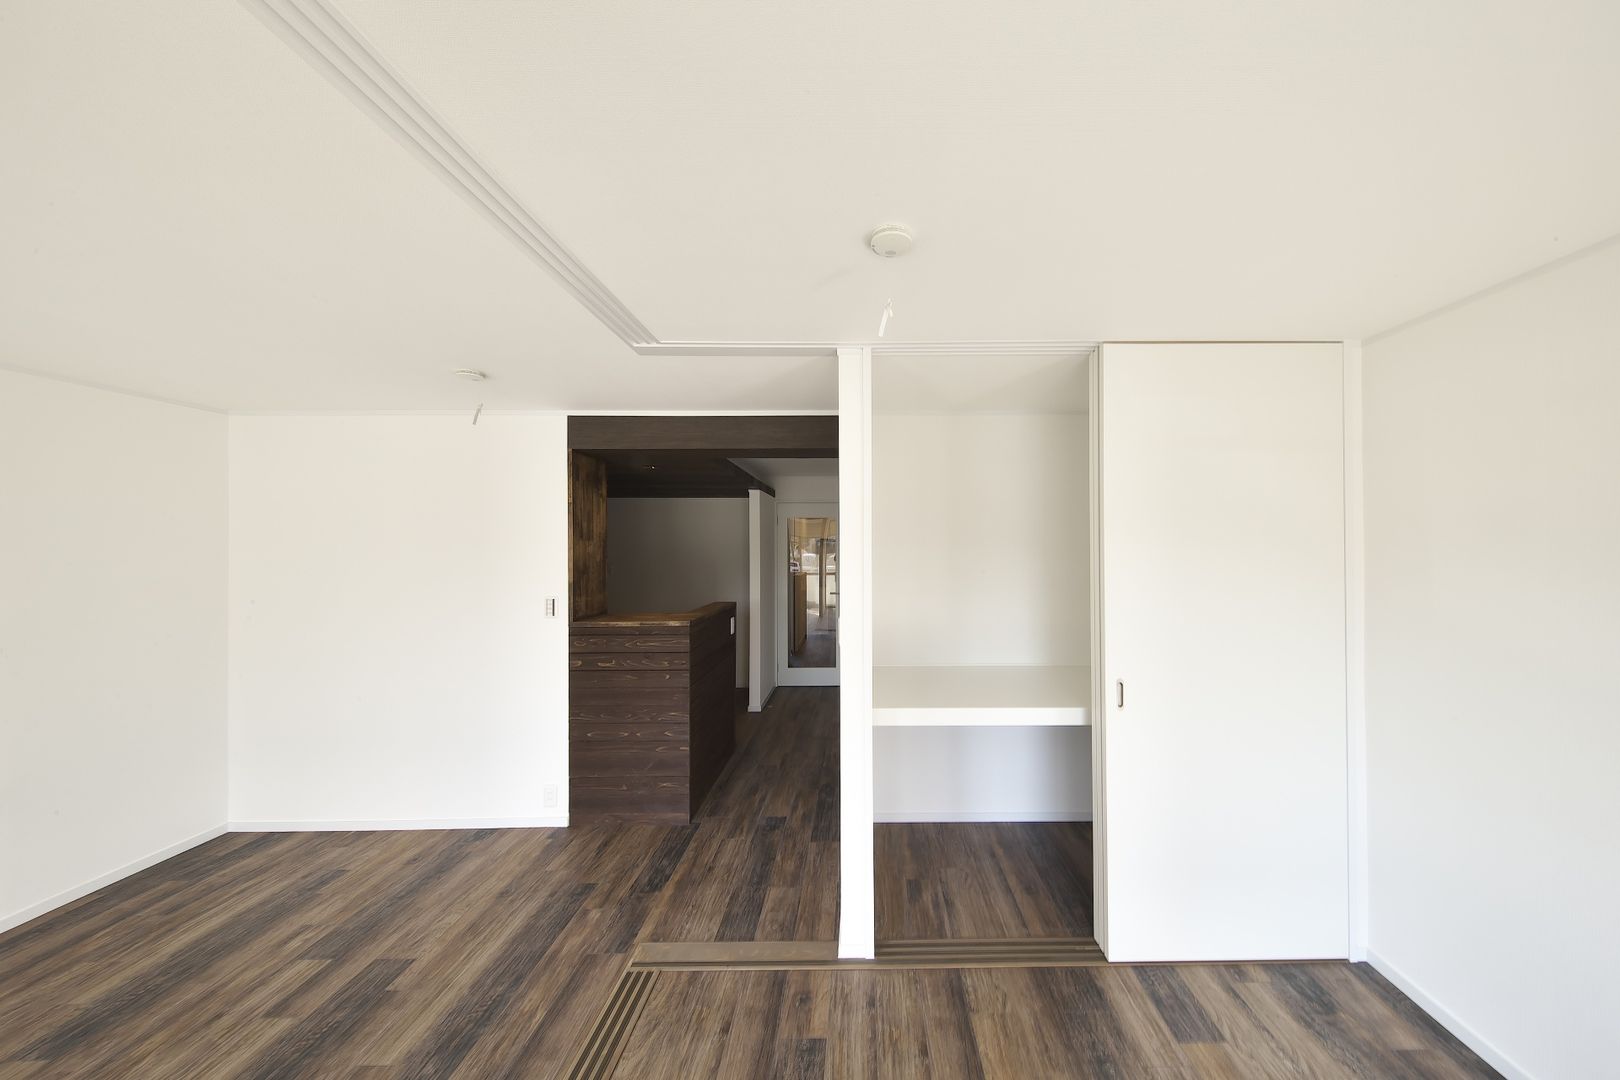 Rental apartment | renovation, FRCHIS,WORKS FRCHIS,WORKS Вітальня Дерево Дерев'яні